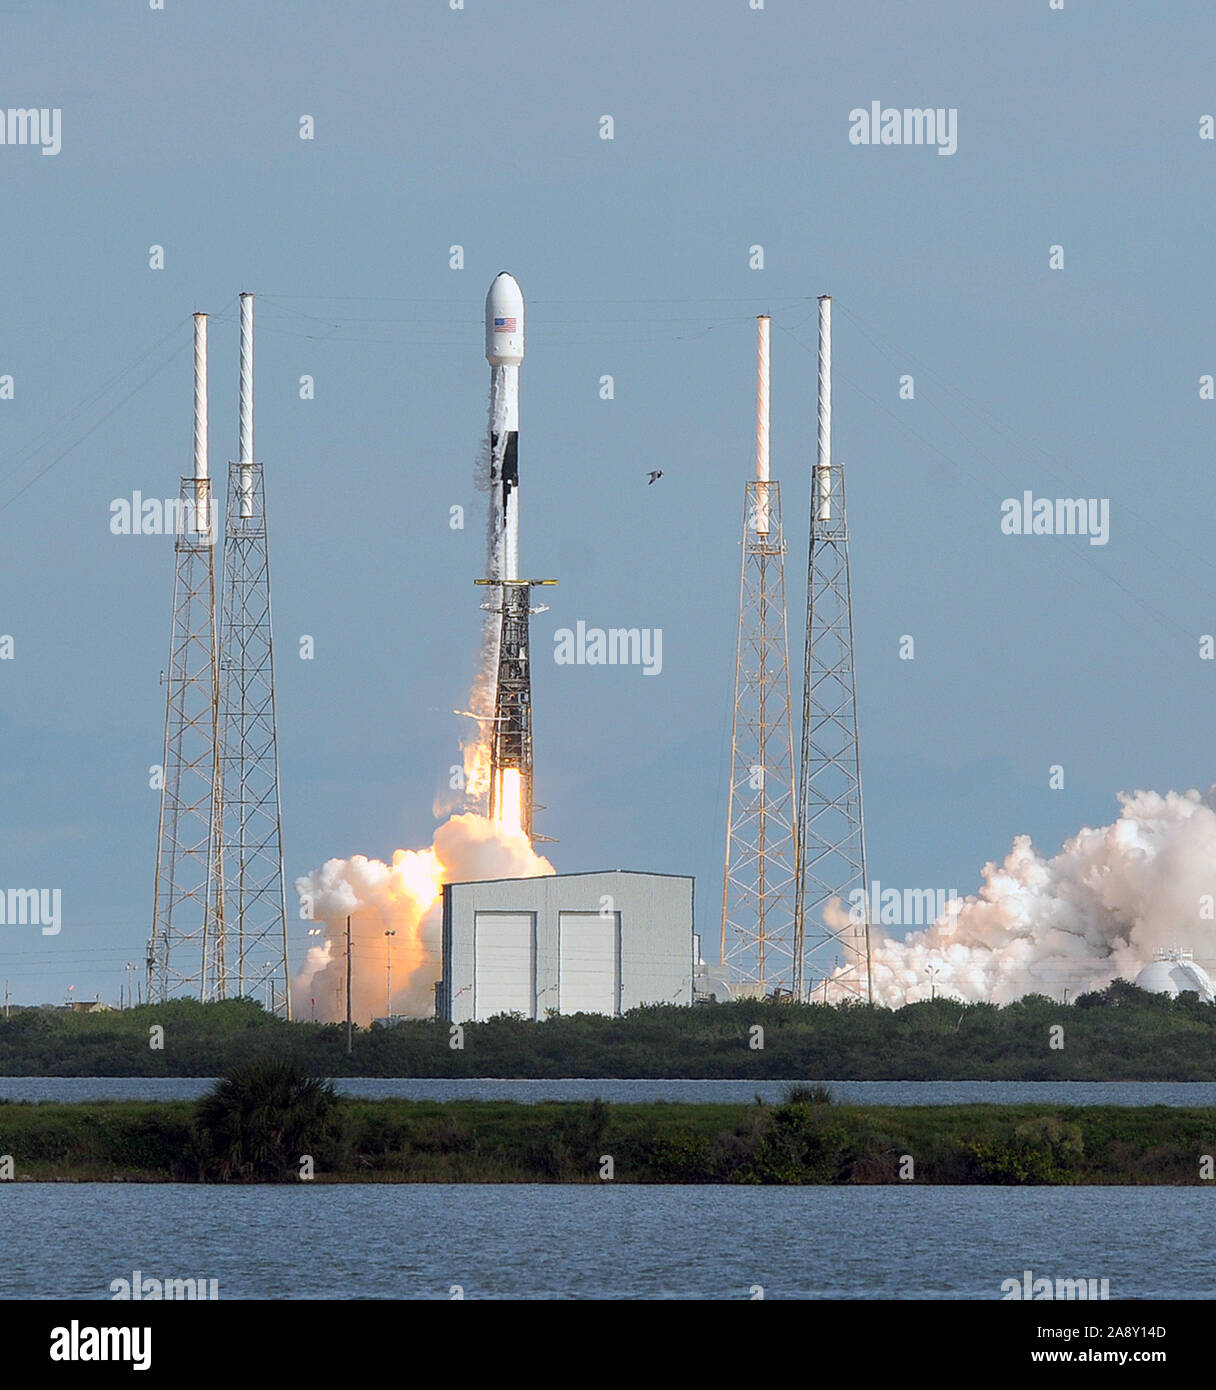 Cabo Cañaveral, Estados Unidos. 11 Nov, 2019. Un cohete SpaceX Falcon 9 despega desde Cabo Cañaveral de la Fuerza Aérea estación llevando 60 Starlink satélites. El Starlink constelación se compondría de miles de satélites en todo el mundo diseñado para ofrecer servicio de internet de alta velocidad. Crédito: Sopa de imágenes limitado/Alamy Live News Foto de stock